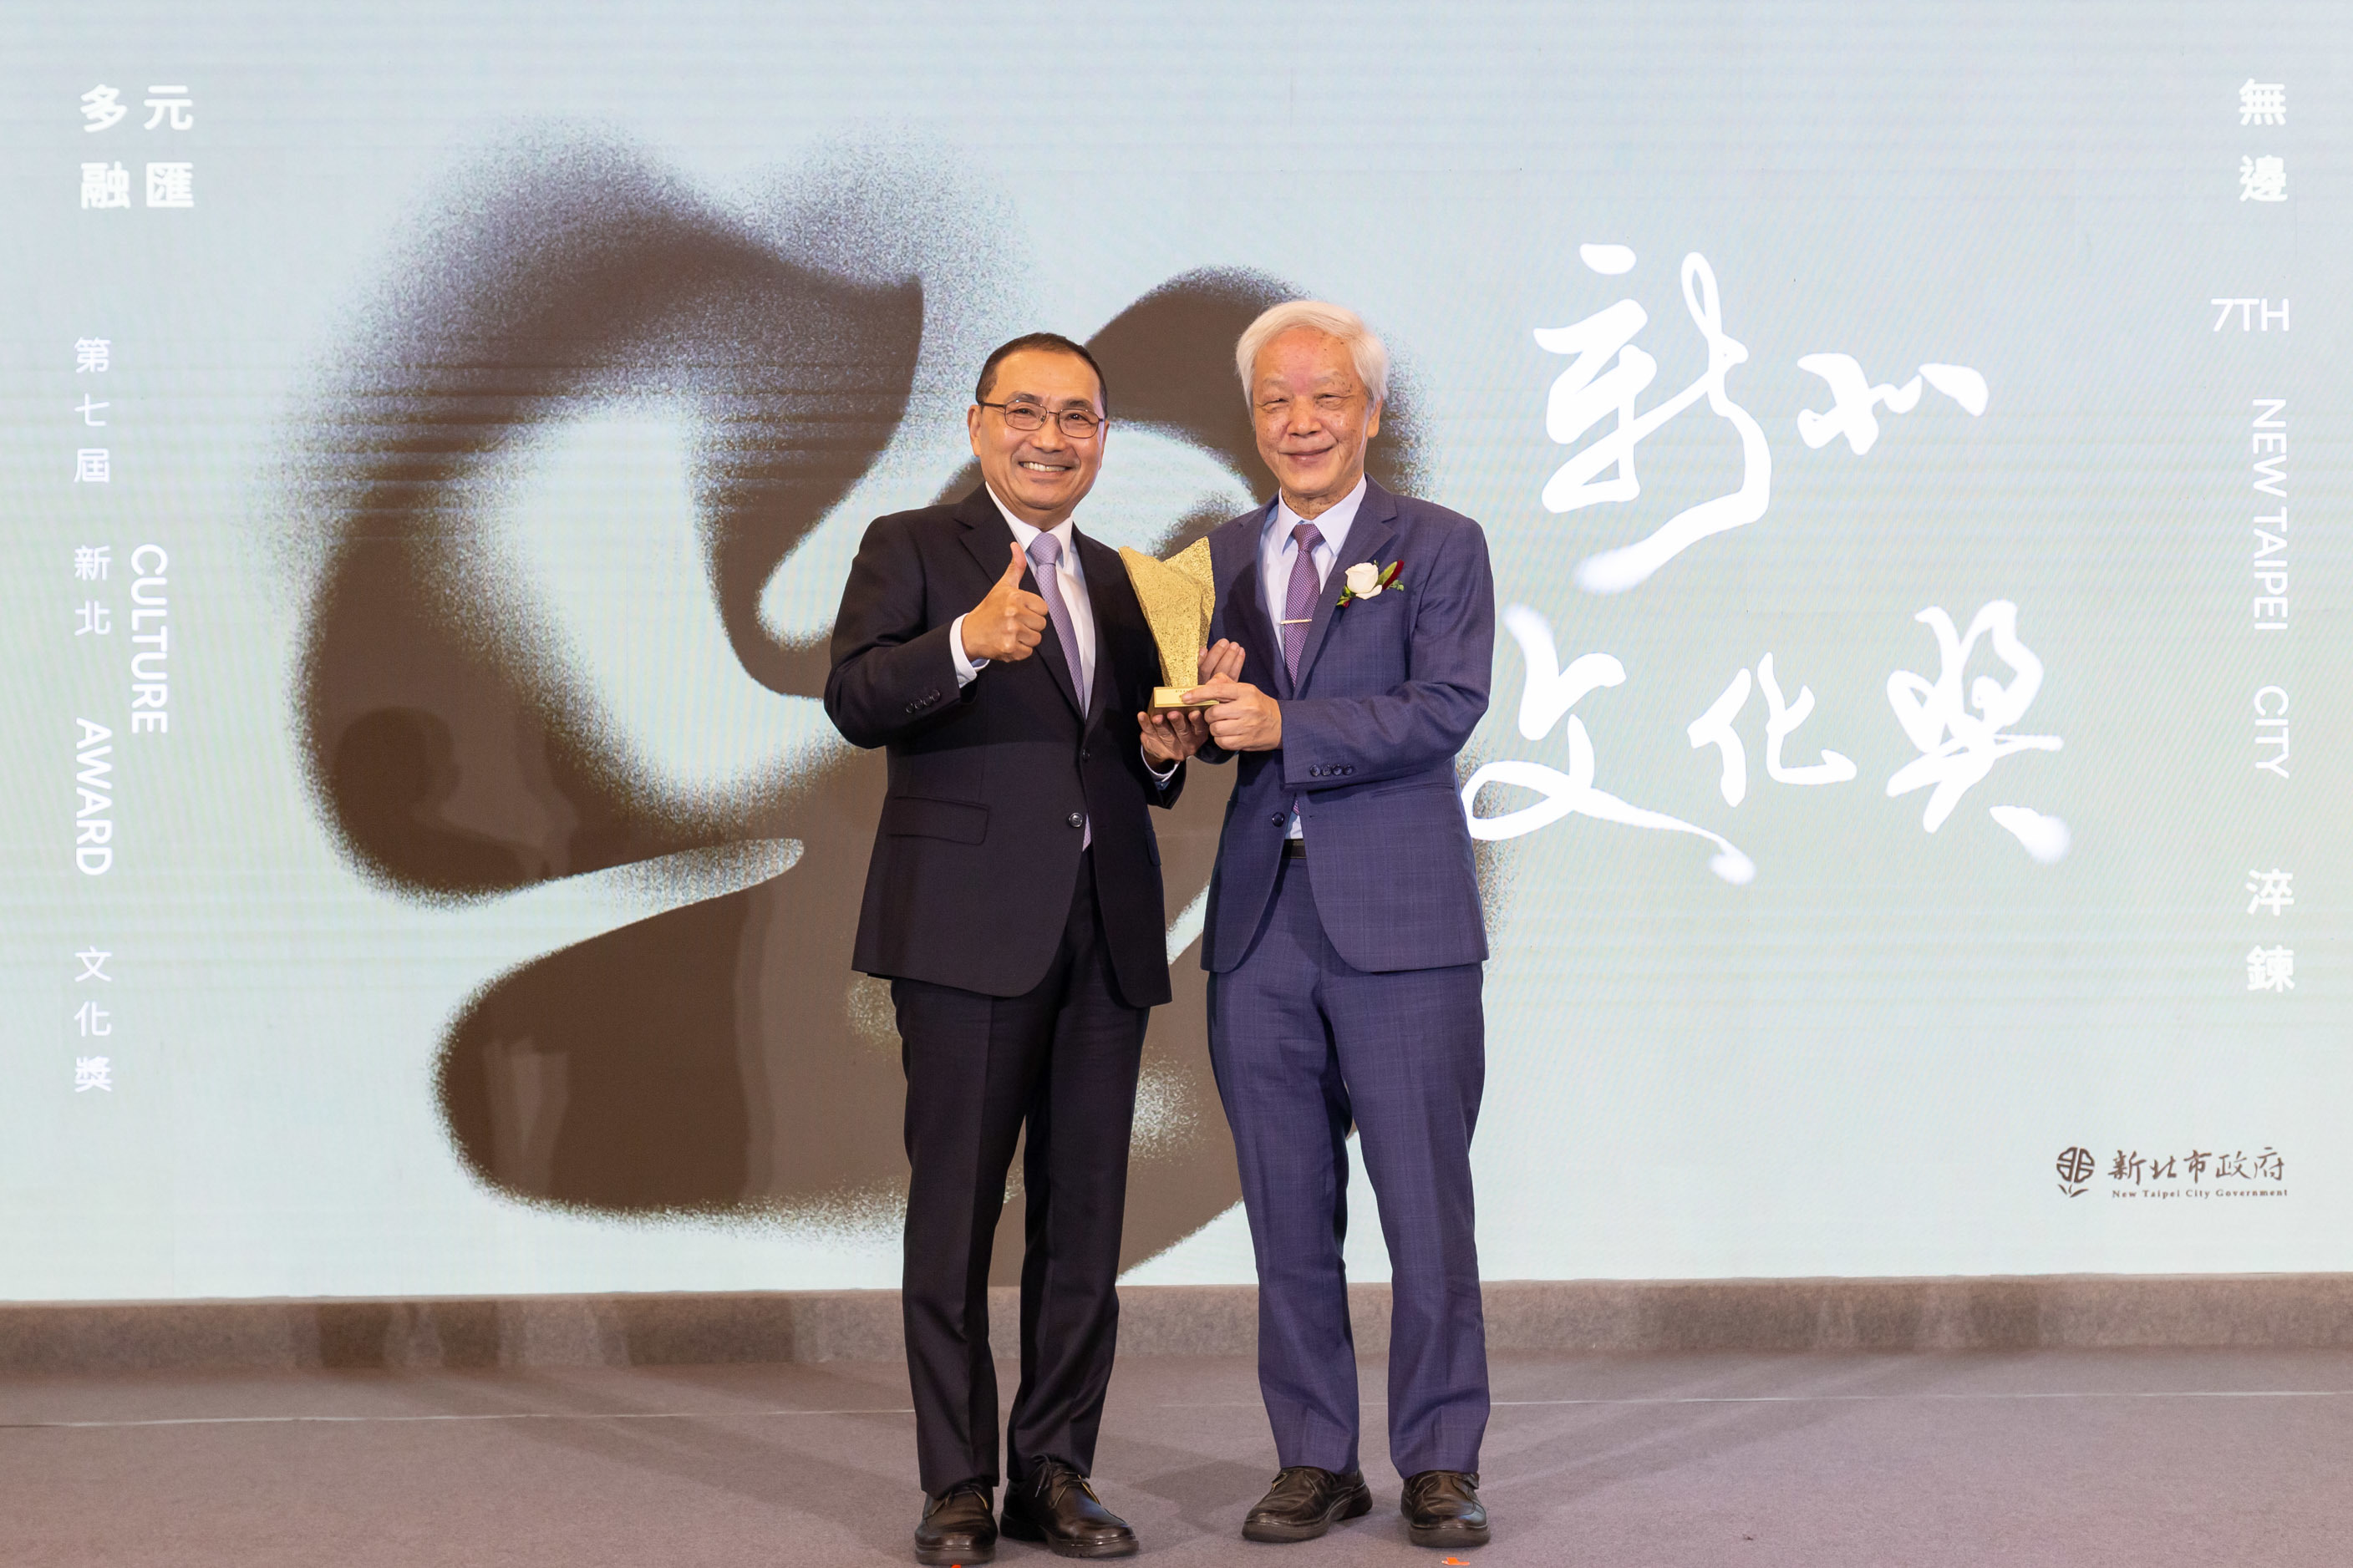 新北市長侯友宜(左)頒發新北文化獎獎座給作家林淇瀁(向陽)(右)。